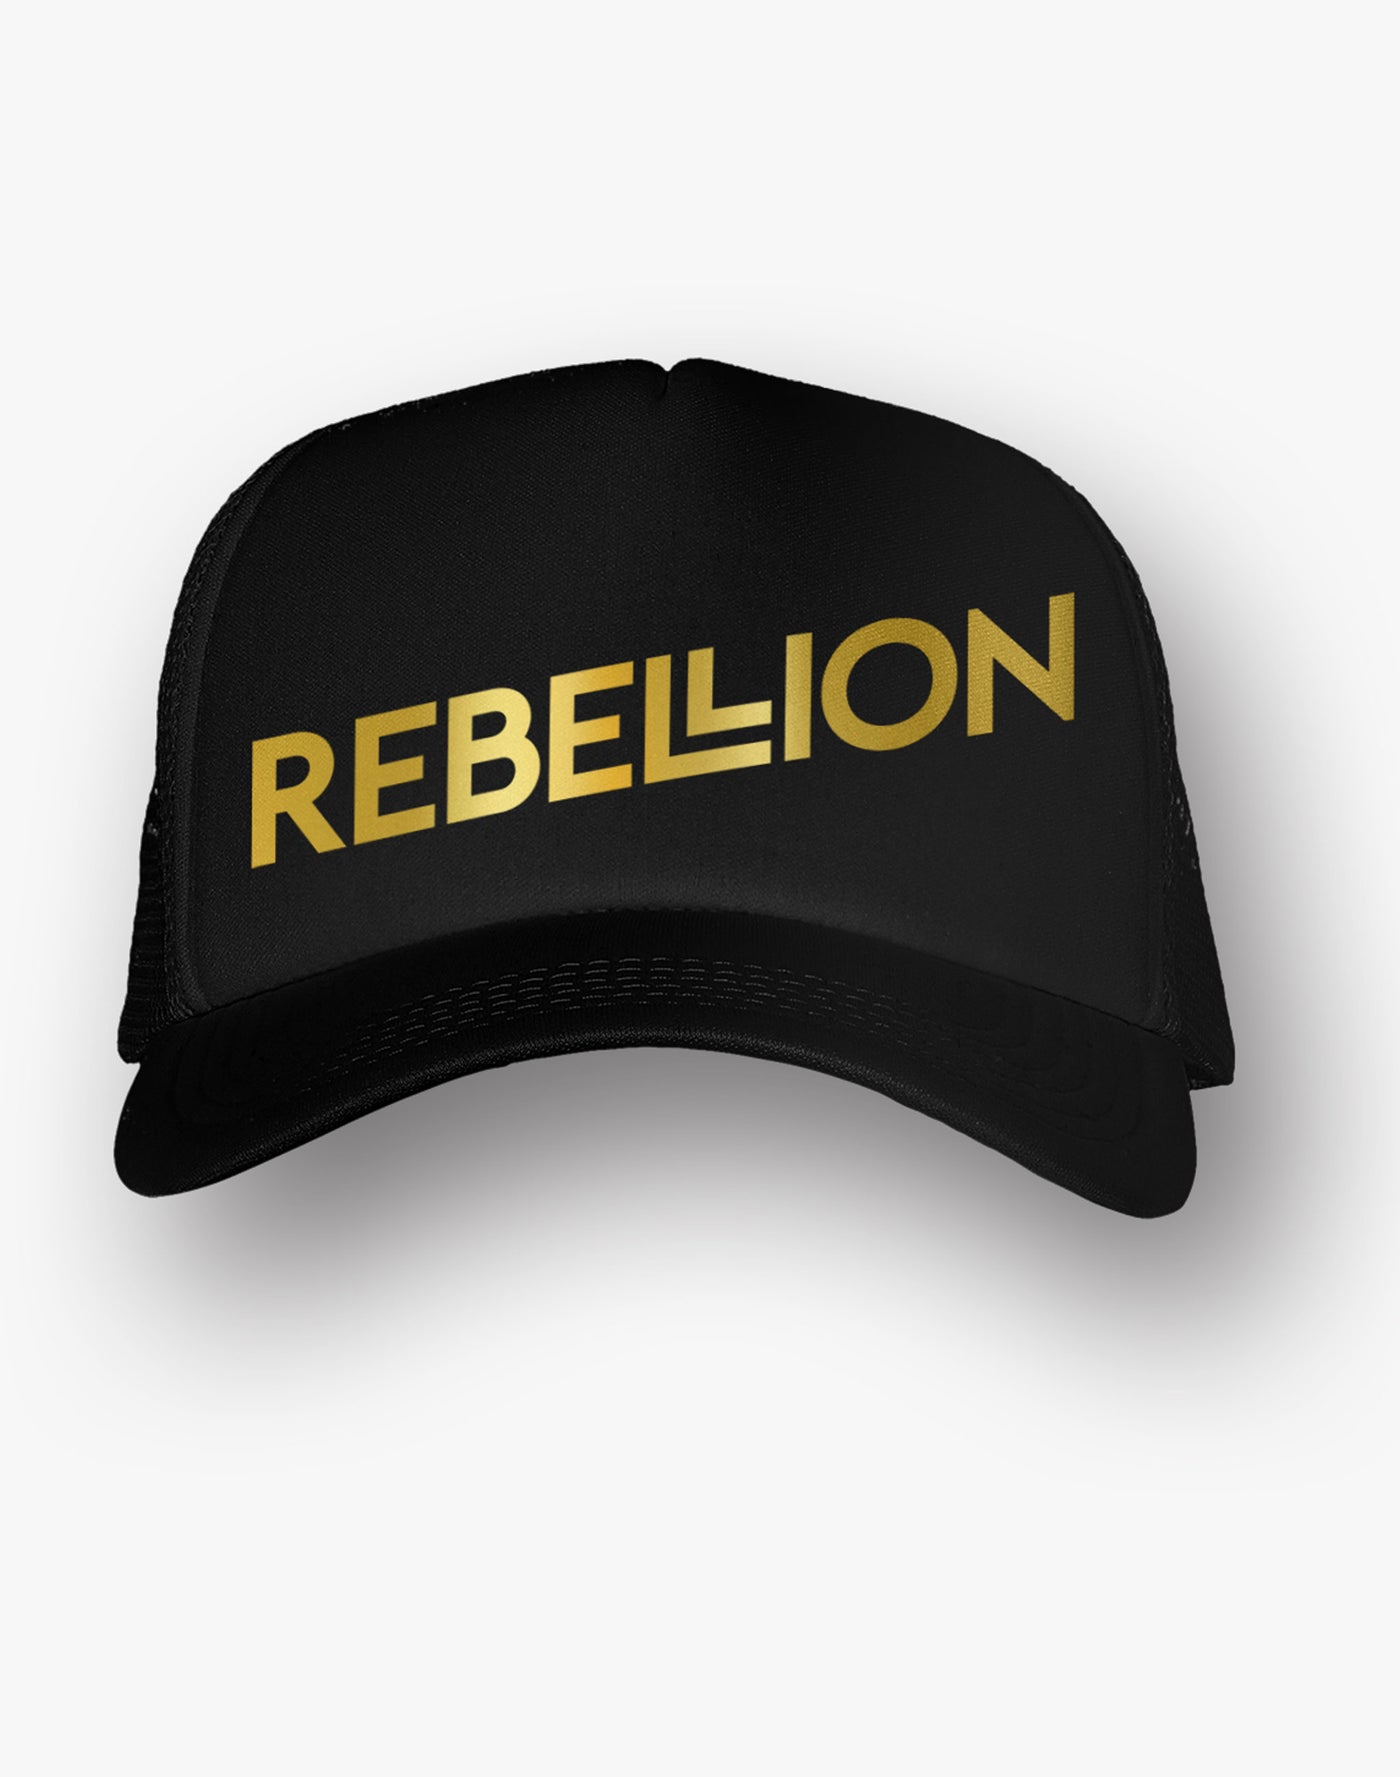 Rebellion Gold Foil Black Trucker Hat